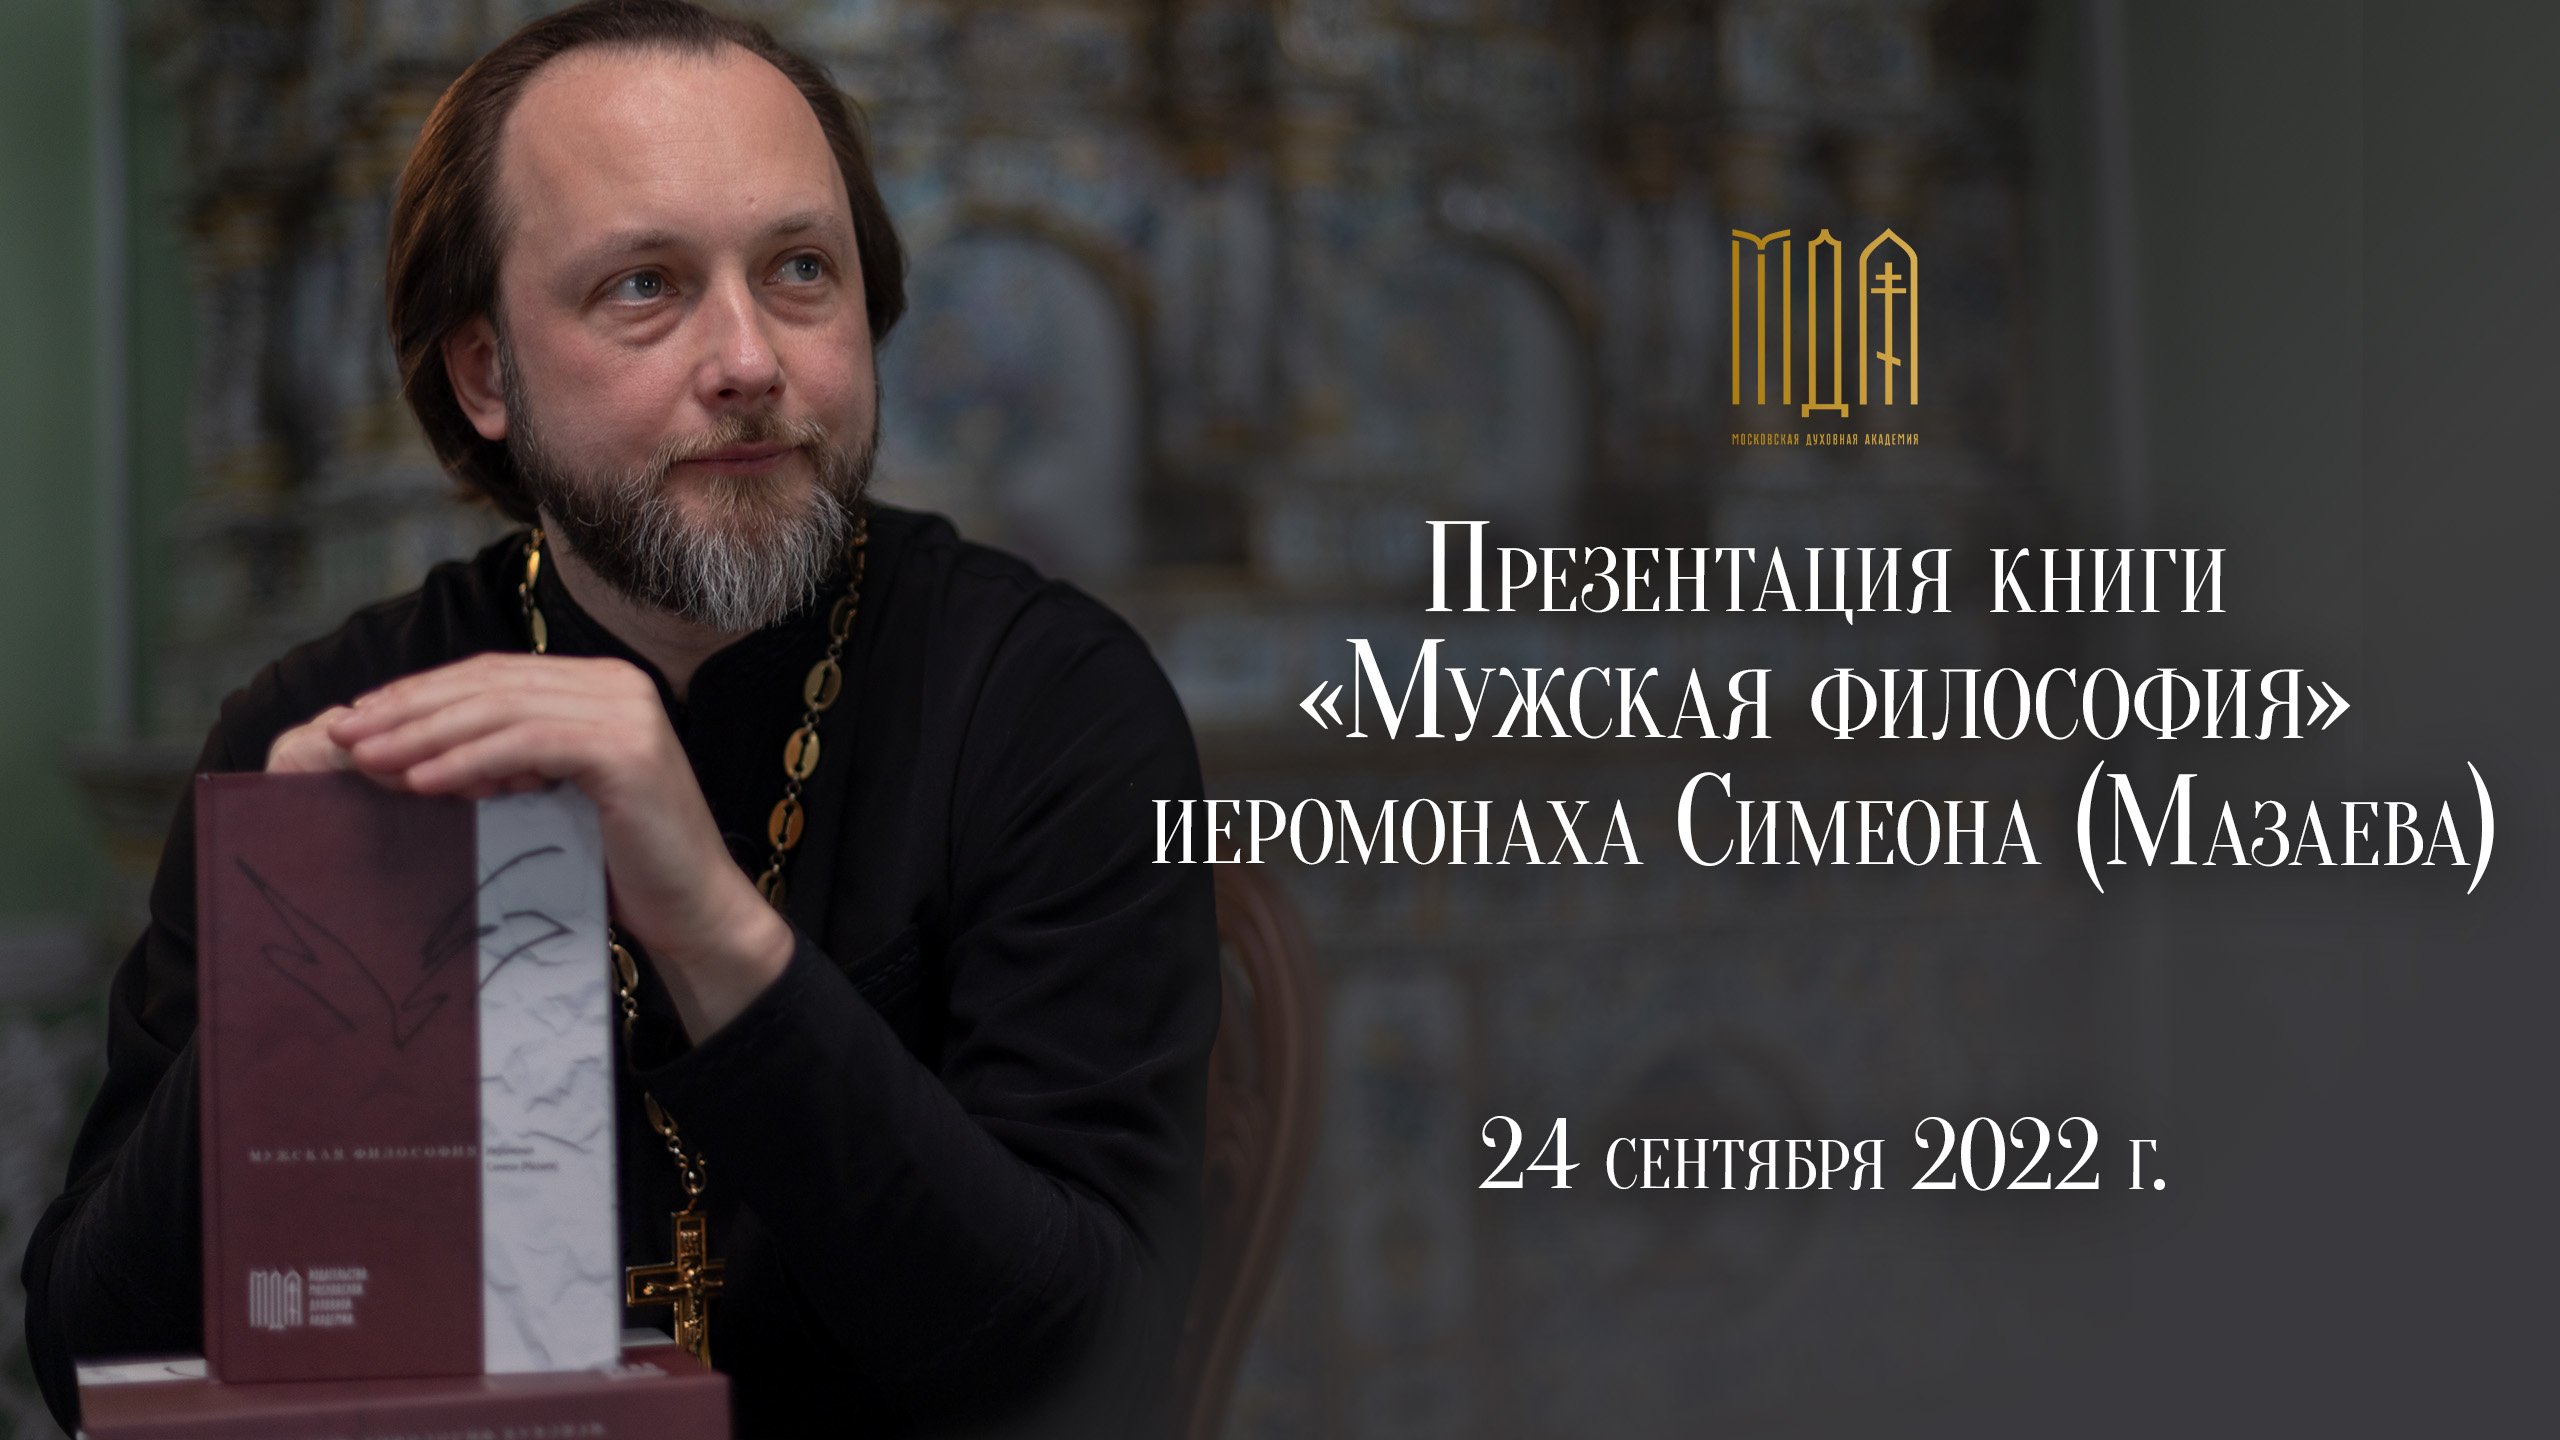 Презентация книги «Мужская философия» иеромонаха Симеона (Мазаева)